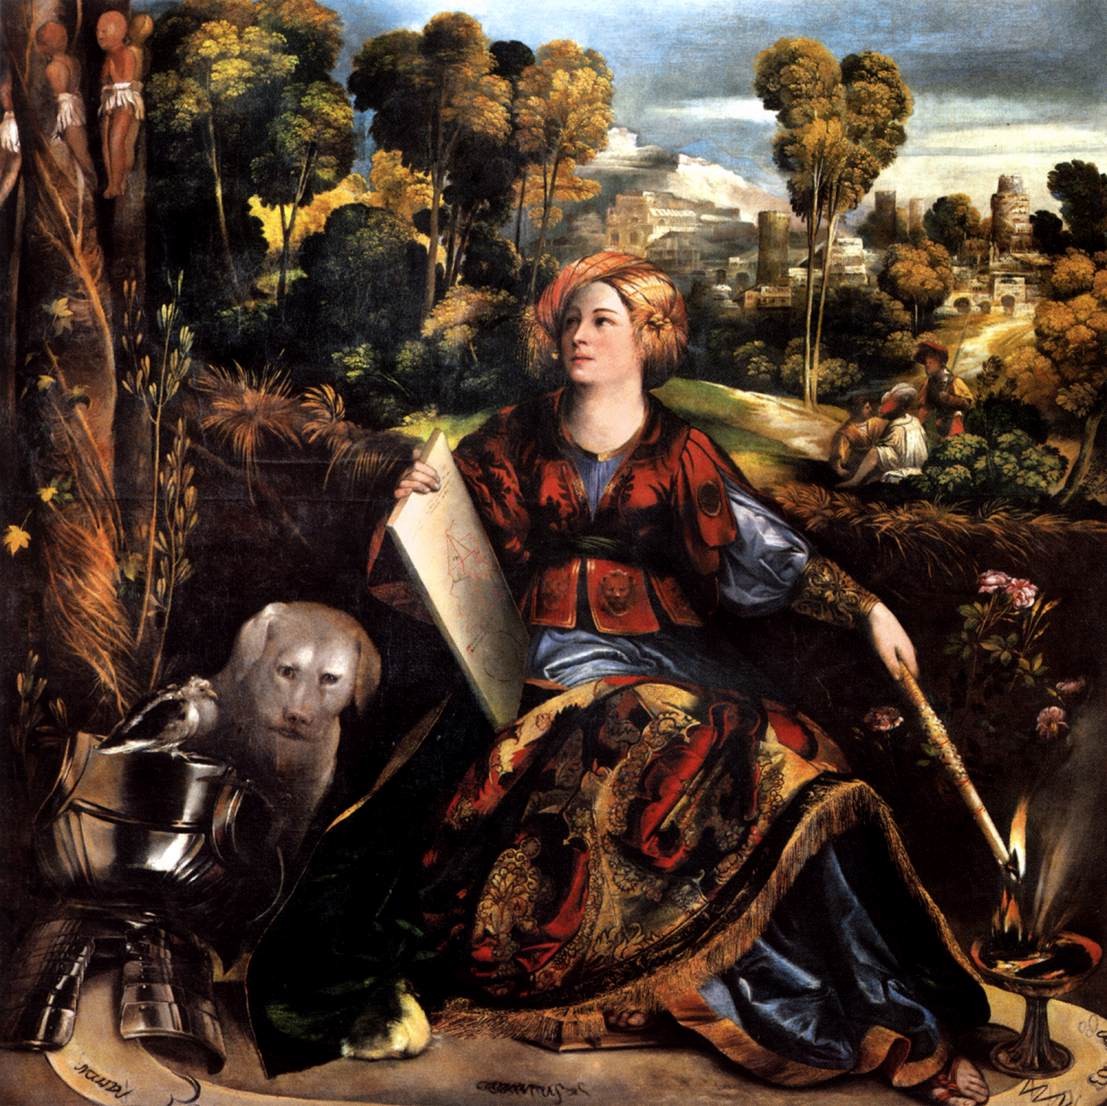 Dosso Dossi, Melissa (1518 circa; olio su tela, 170 x 172 cm; Roma, Galleria Borghese)